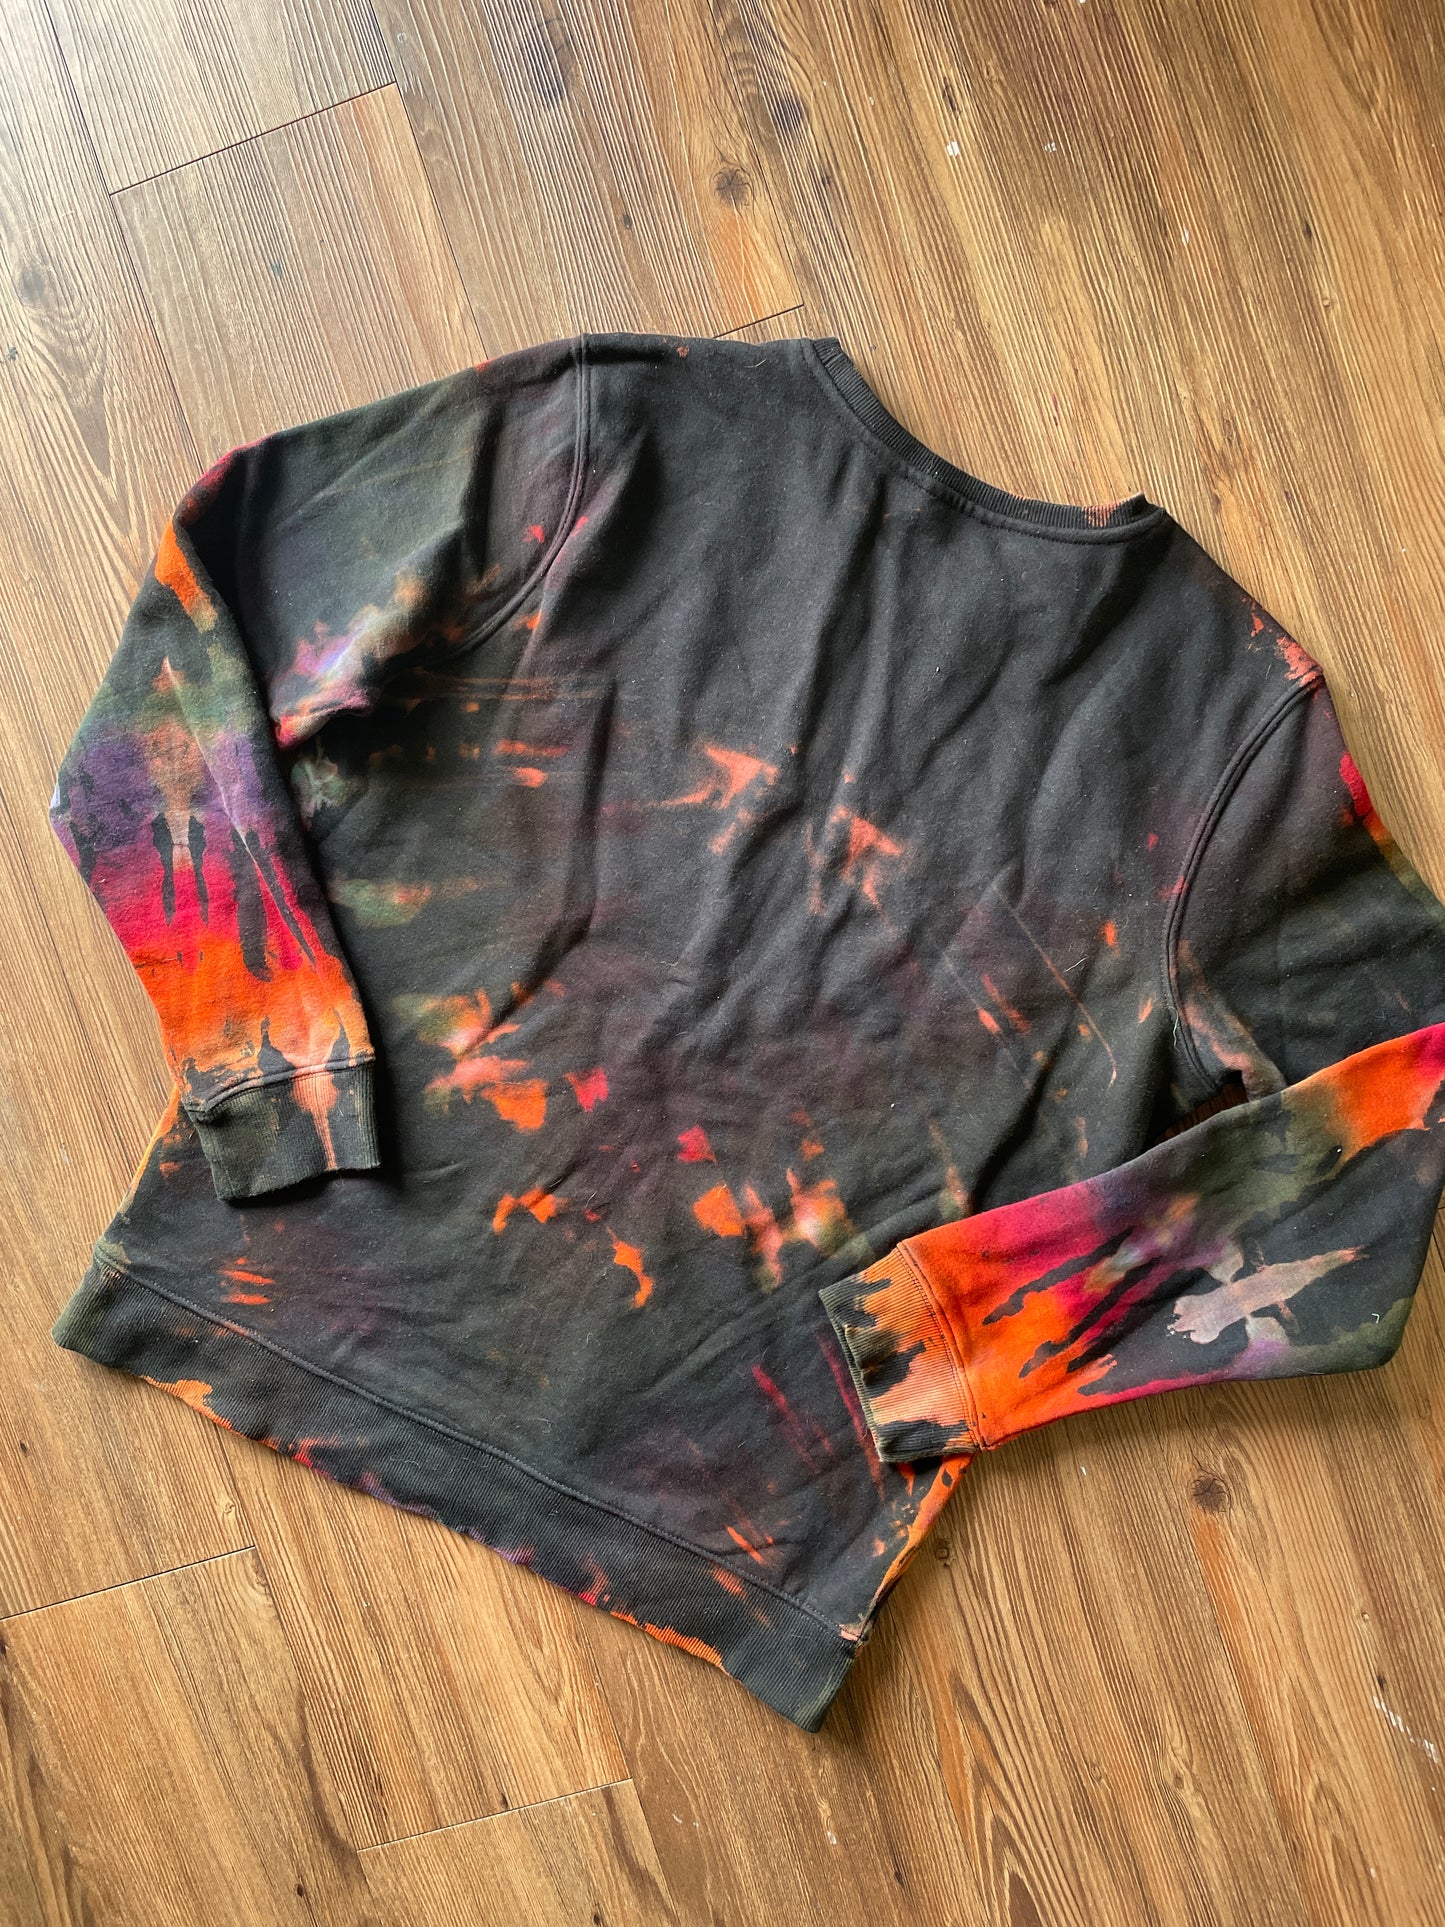 LARGE Men’s BLACK Tie Dye Crewneck Sweatshirt | Black and Rainbow Reverse Tie Dye Long Sleeve